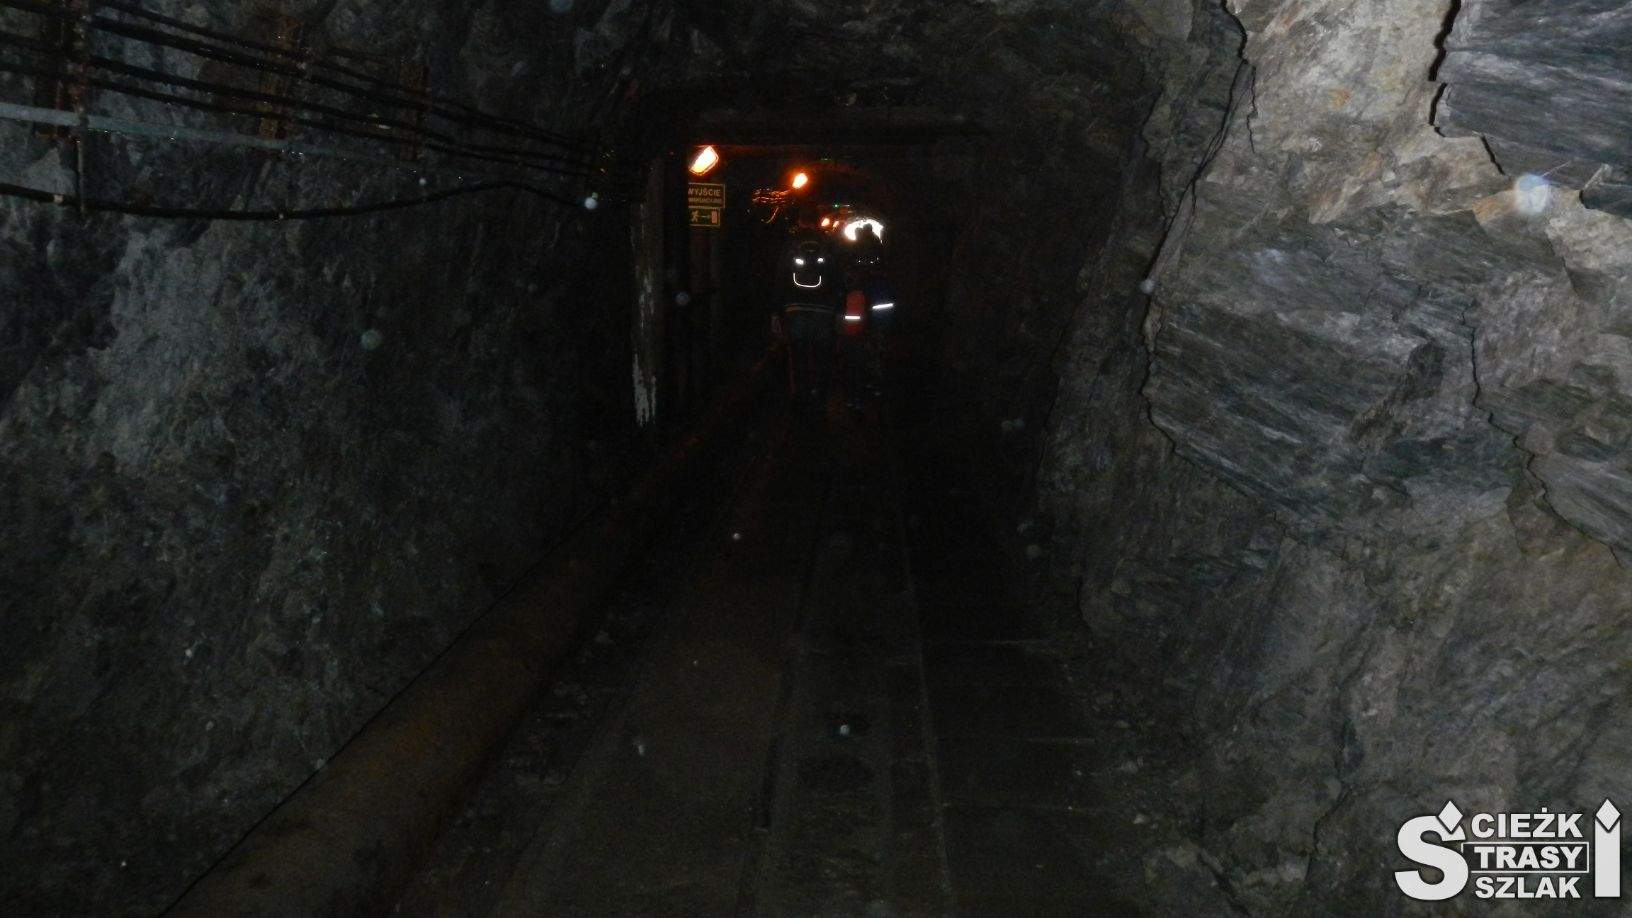 Chodnik górniczy ze światełkami w zalanym wodą tunelu wykorzystywanym do spływu łodzią